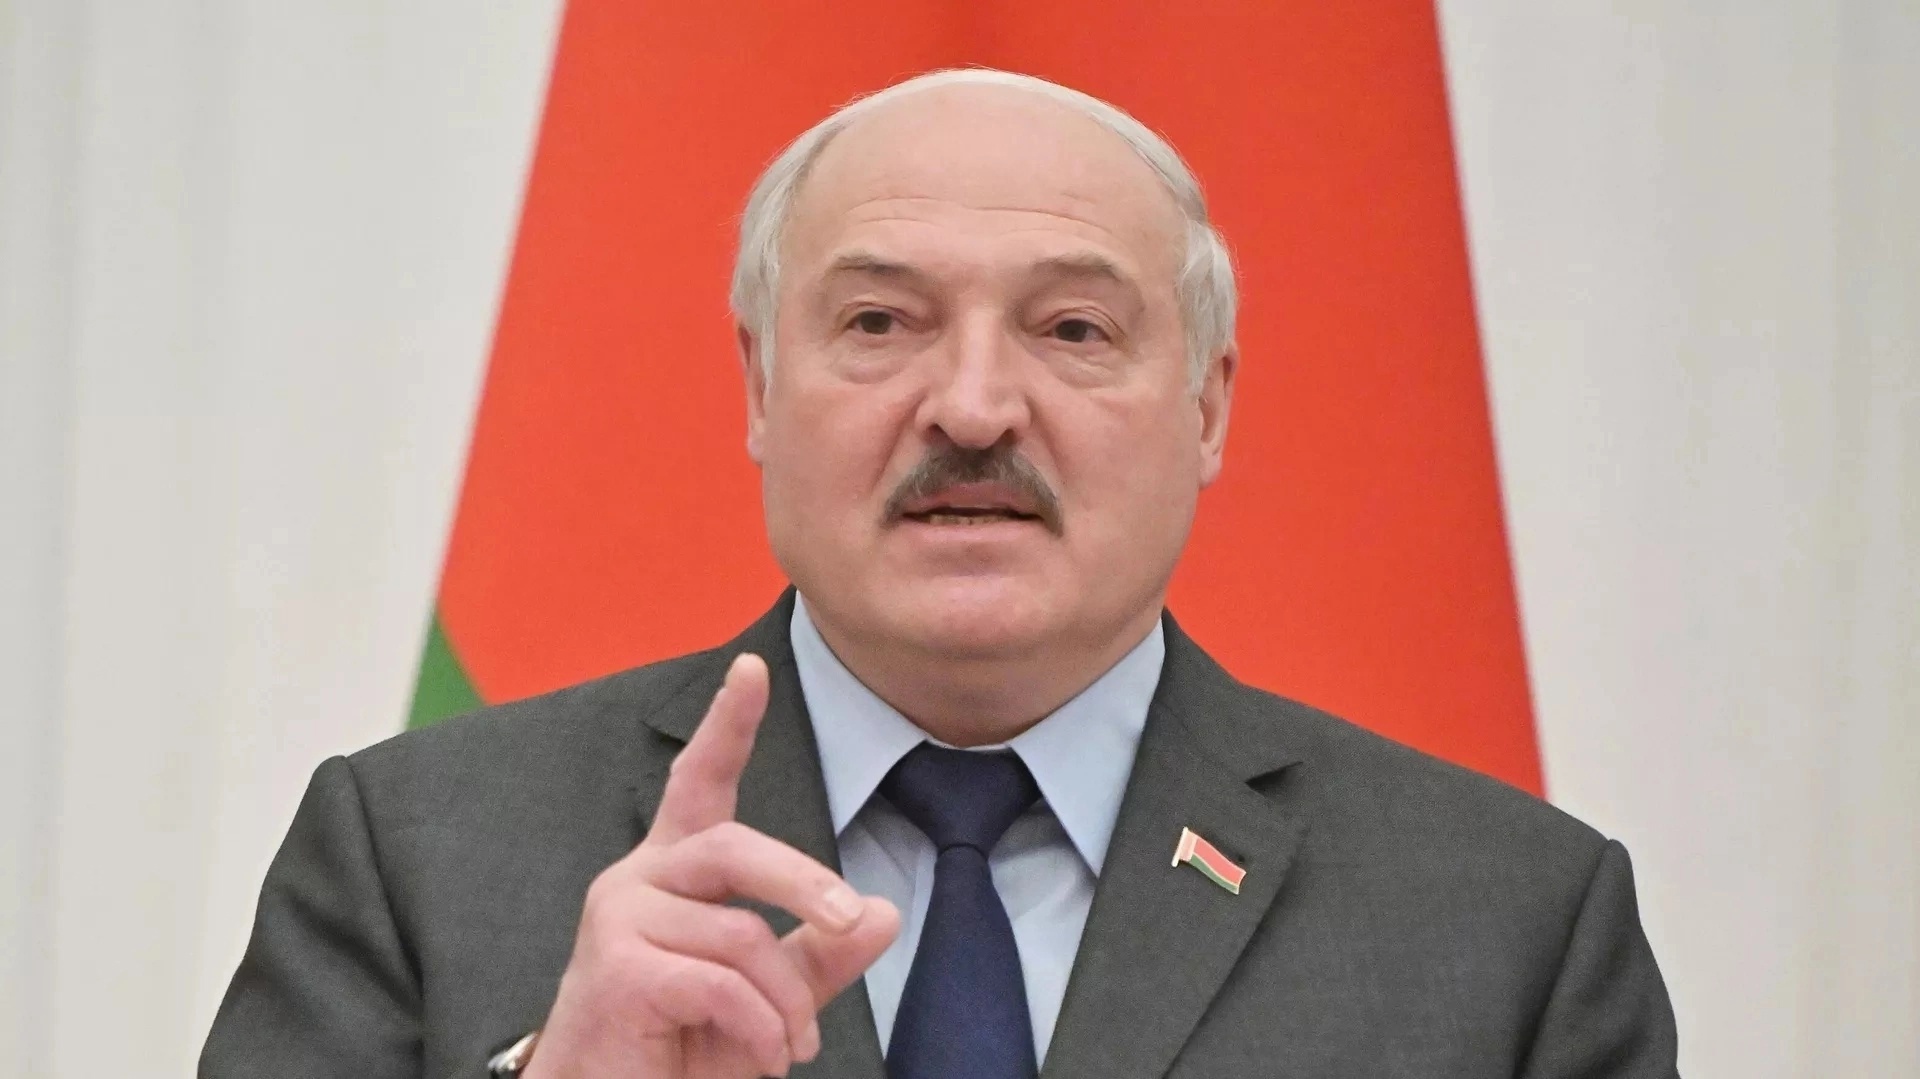 На брошенные стране вызовы народ отвечал, выходя на референдумы и голосуя на выборах – Лукашенко